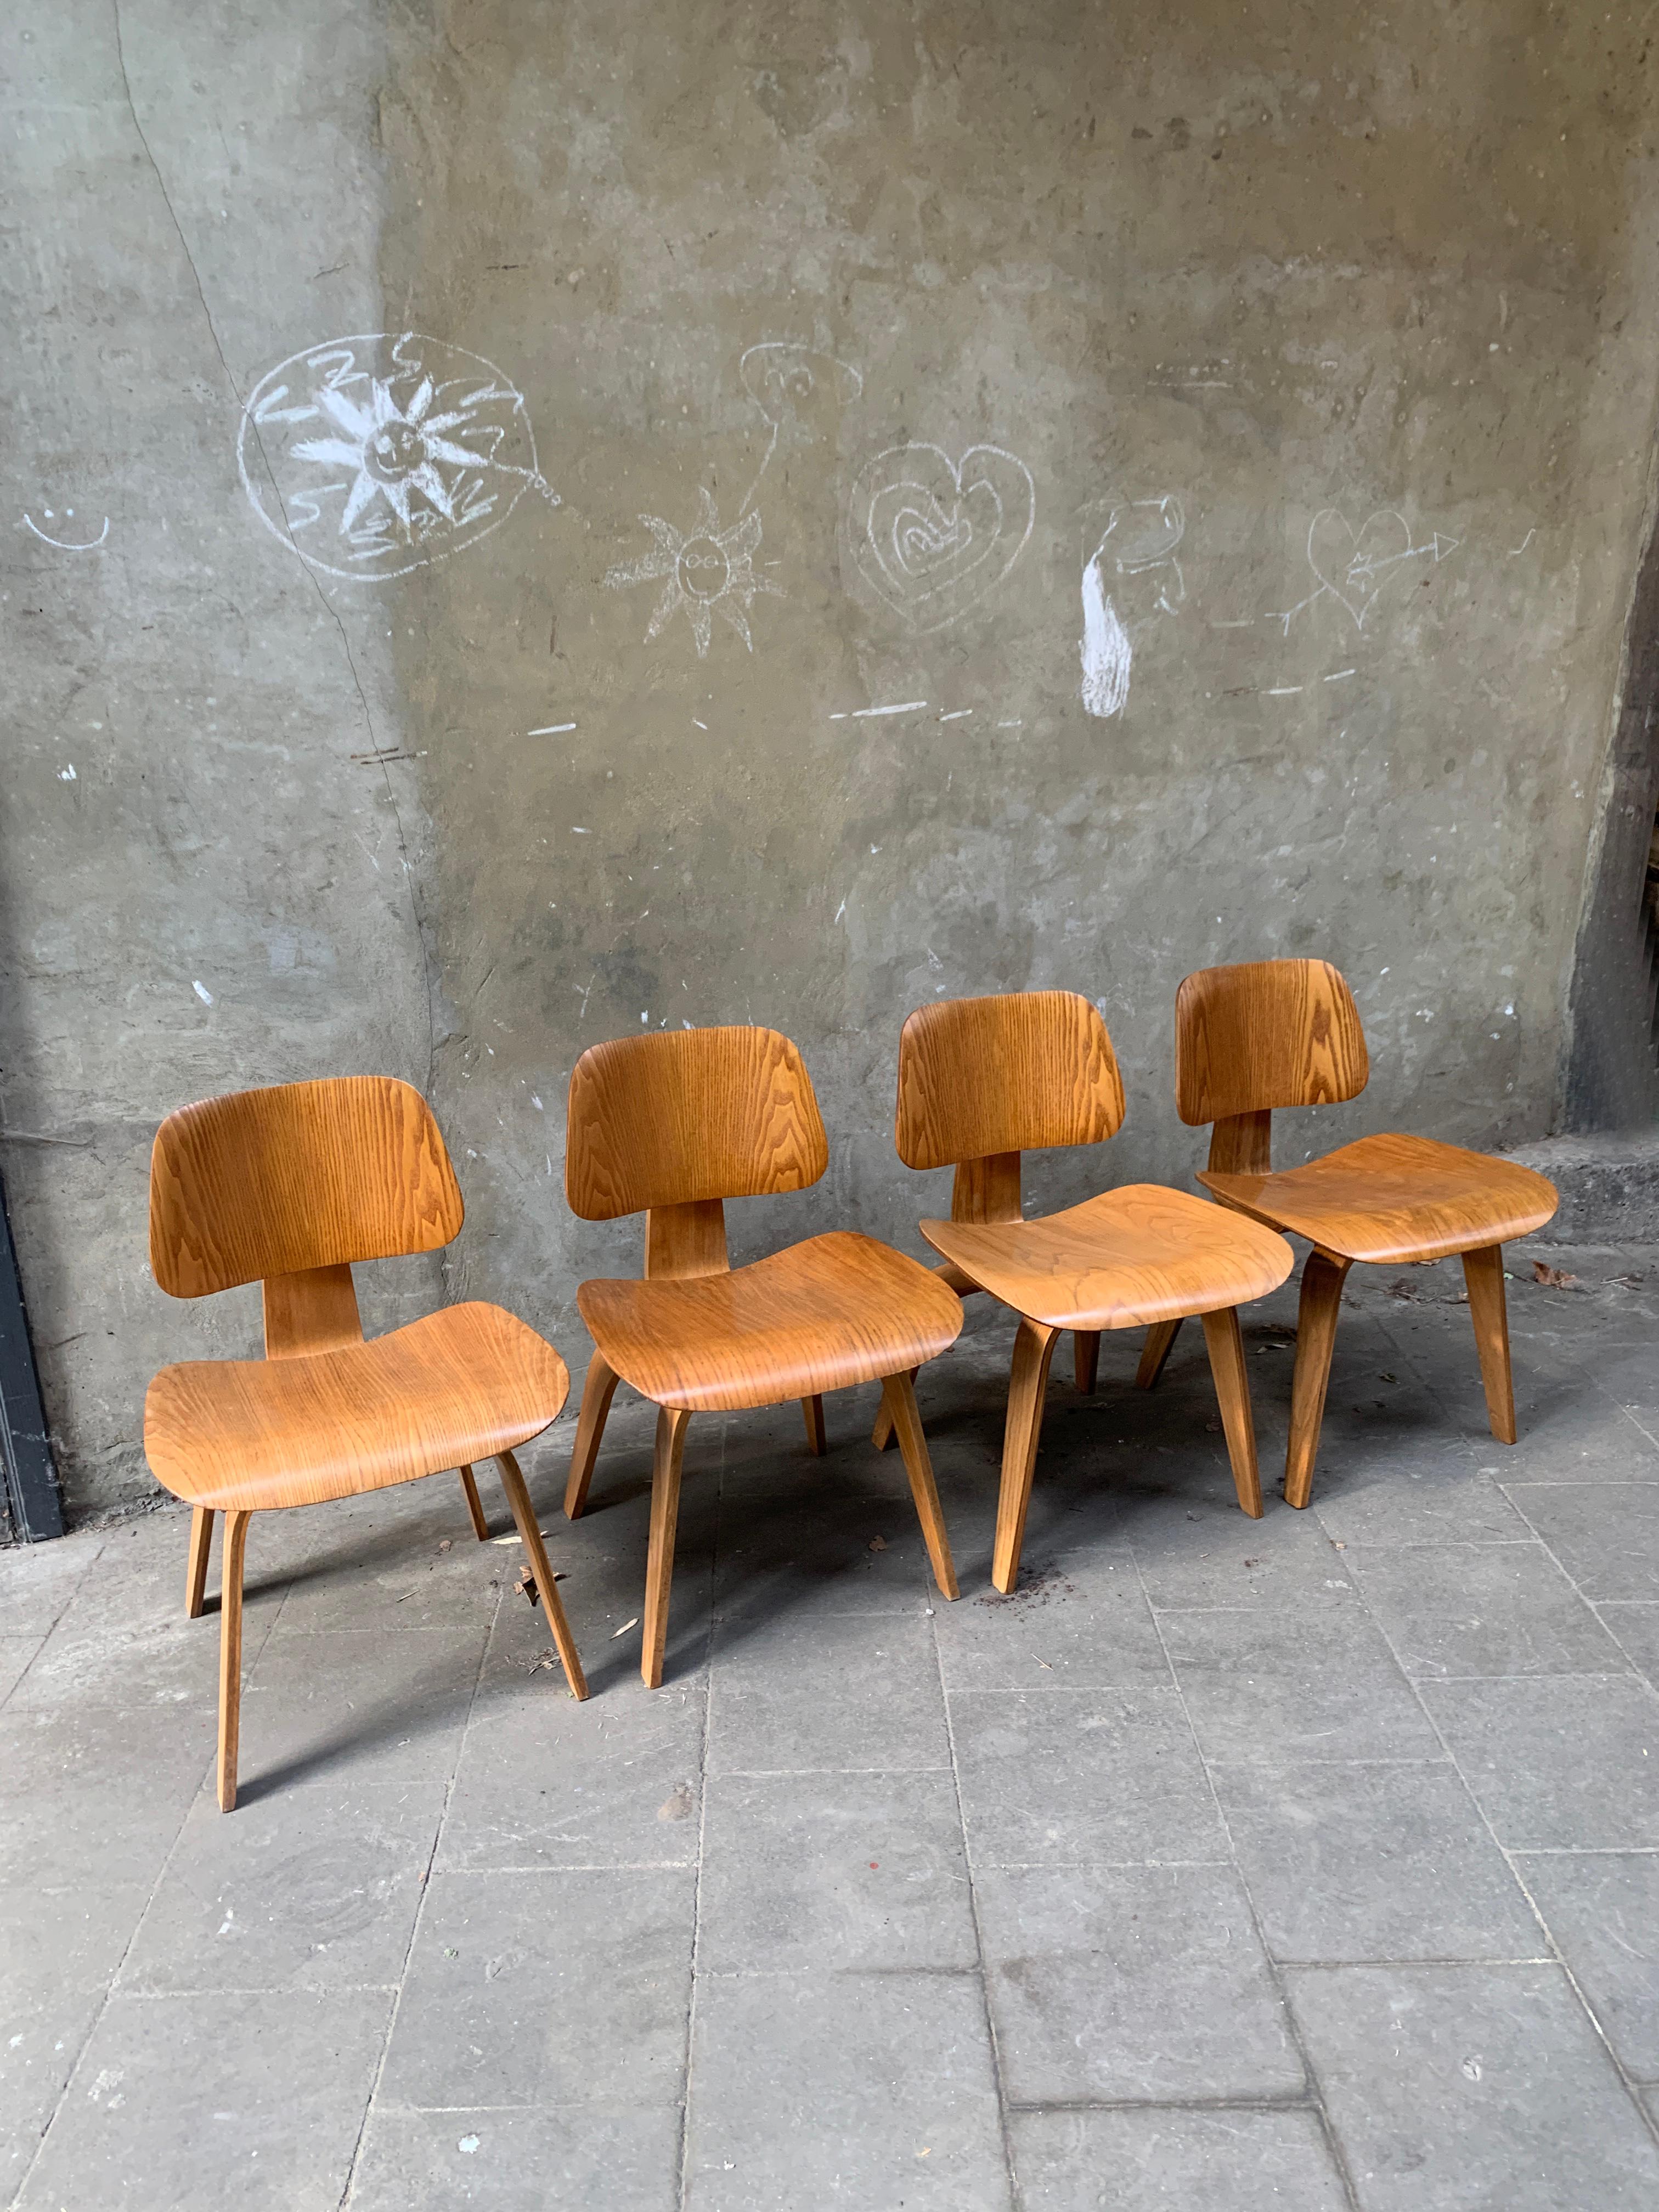 DCW (dining chair wood) Stühle Aus Eschenfurnier. 
Stühle der ersten Generation, die von der Evans Products Company hergestellt und zwischen 1946 und 1950 von Herman Miller vertrieben wurden. 
Alle 4 haben das ursprüngliche Label behalten.